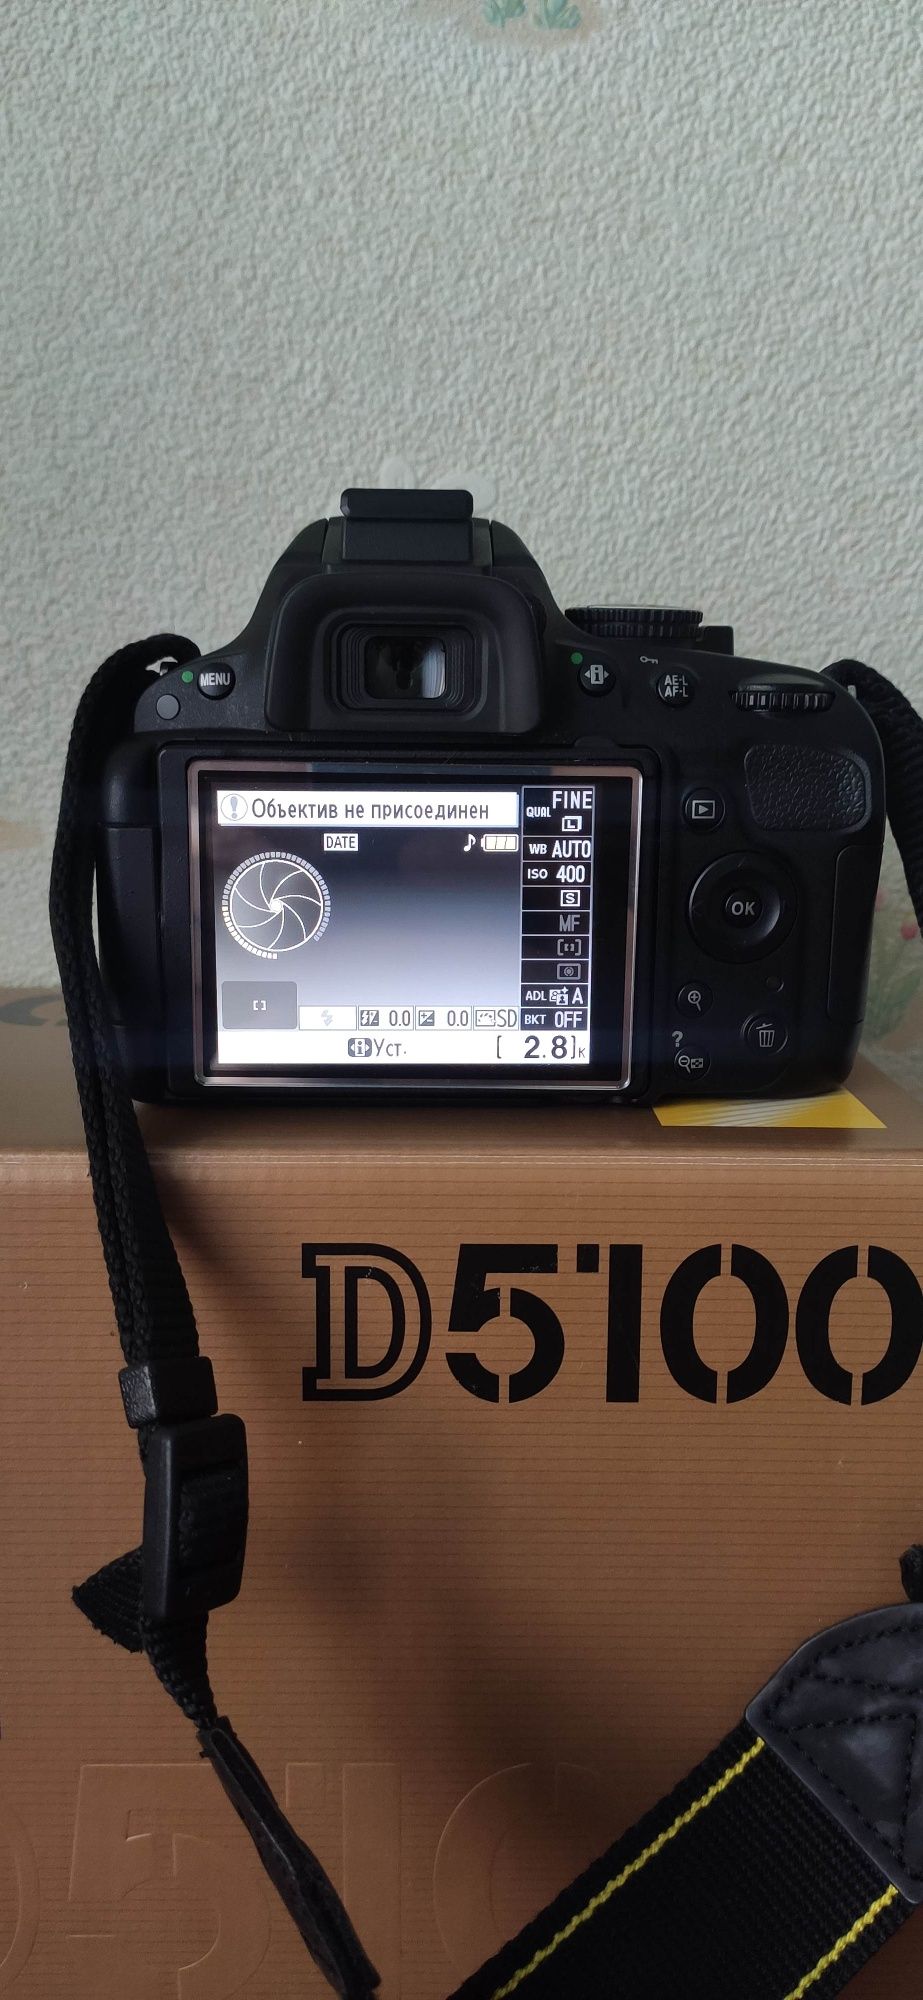 Фотоаппарат Nikon d5100 - полный комплект для начинающего фотографа